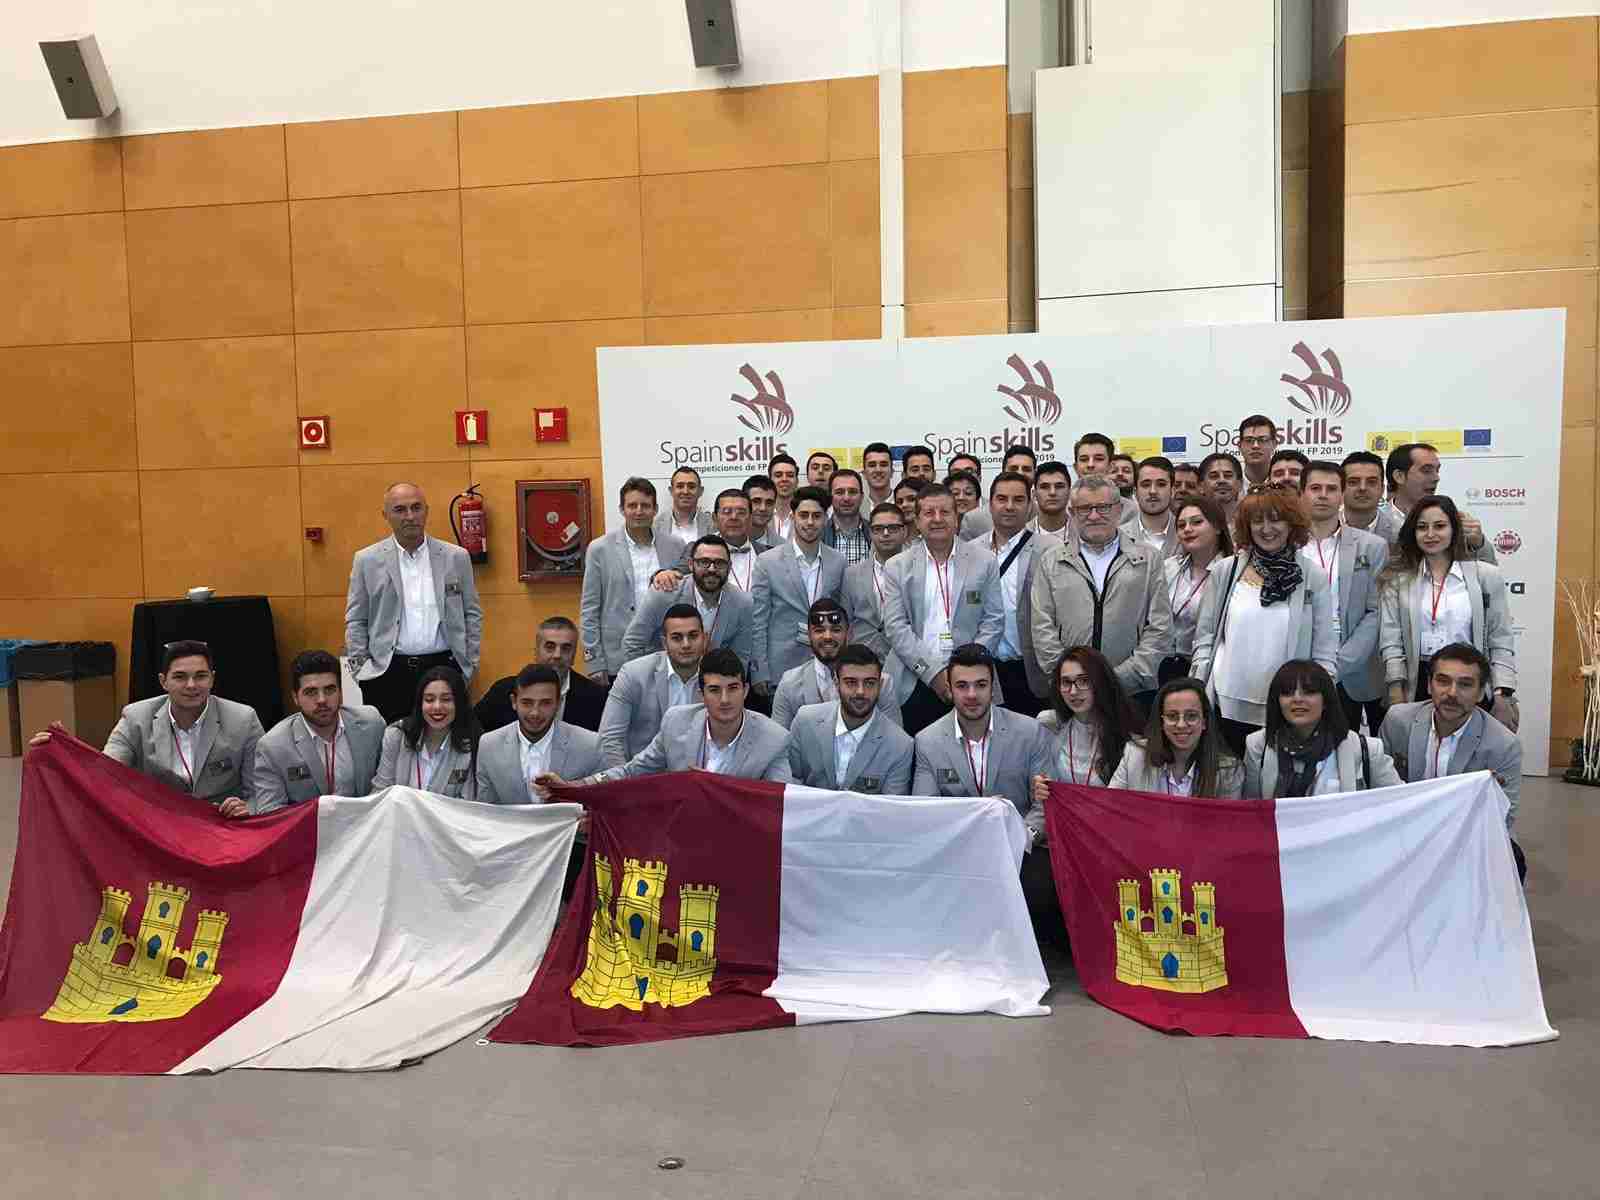 El Gobierno regional felicita a los estudiantes de FP que han demostrado su cualificación y la excelencia de su formación en las ‘Spainskills 2019’ celebradas en Aula 1